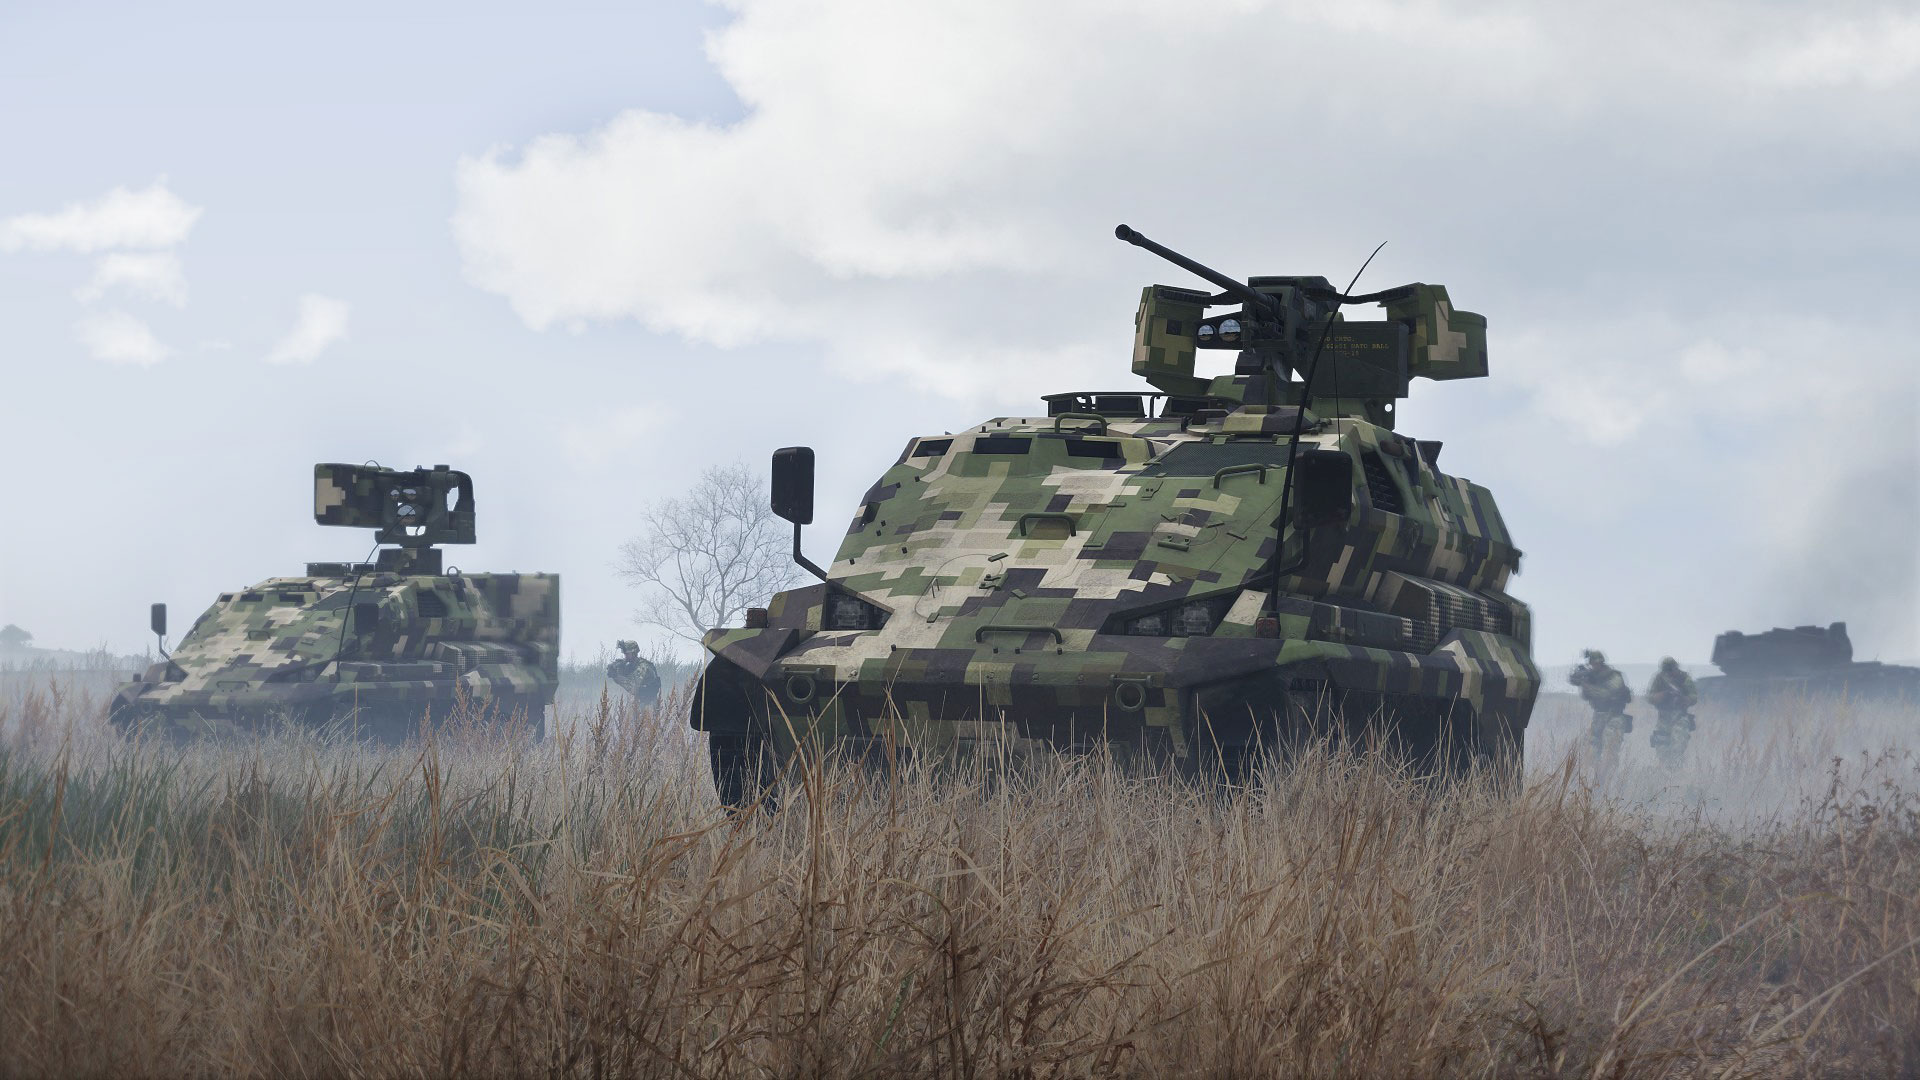 Арма 3 юнит. Арма 3 танк. Arma 3 Tanks DLC. Арма 3 бронетехника. NYX Арма 3.